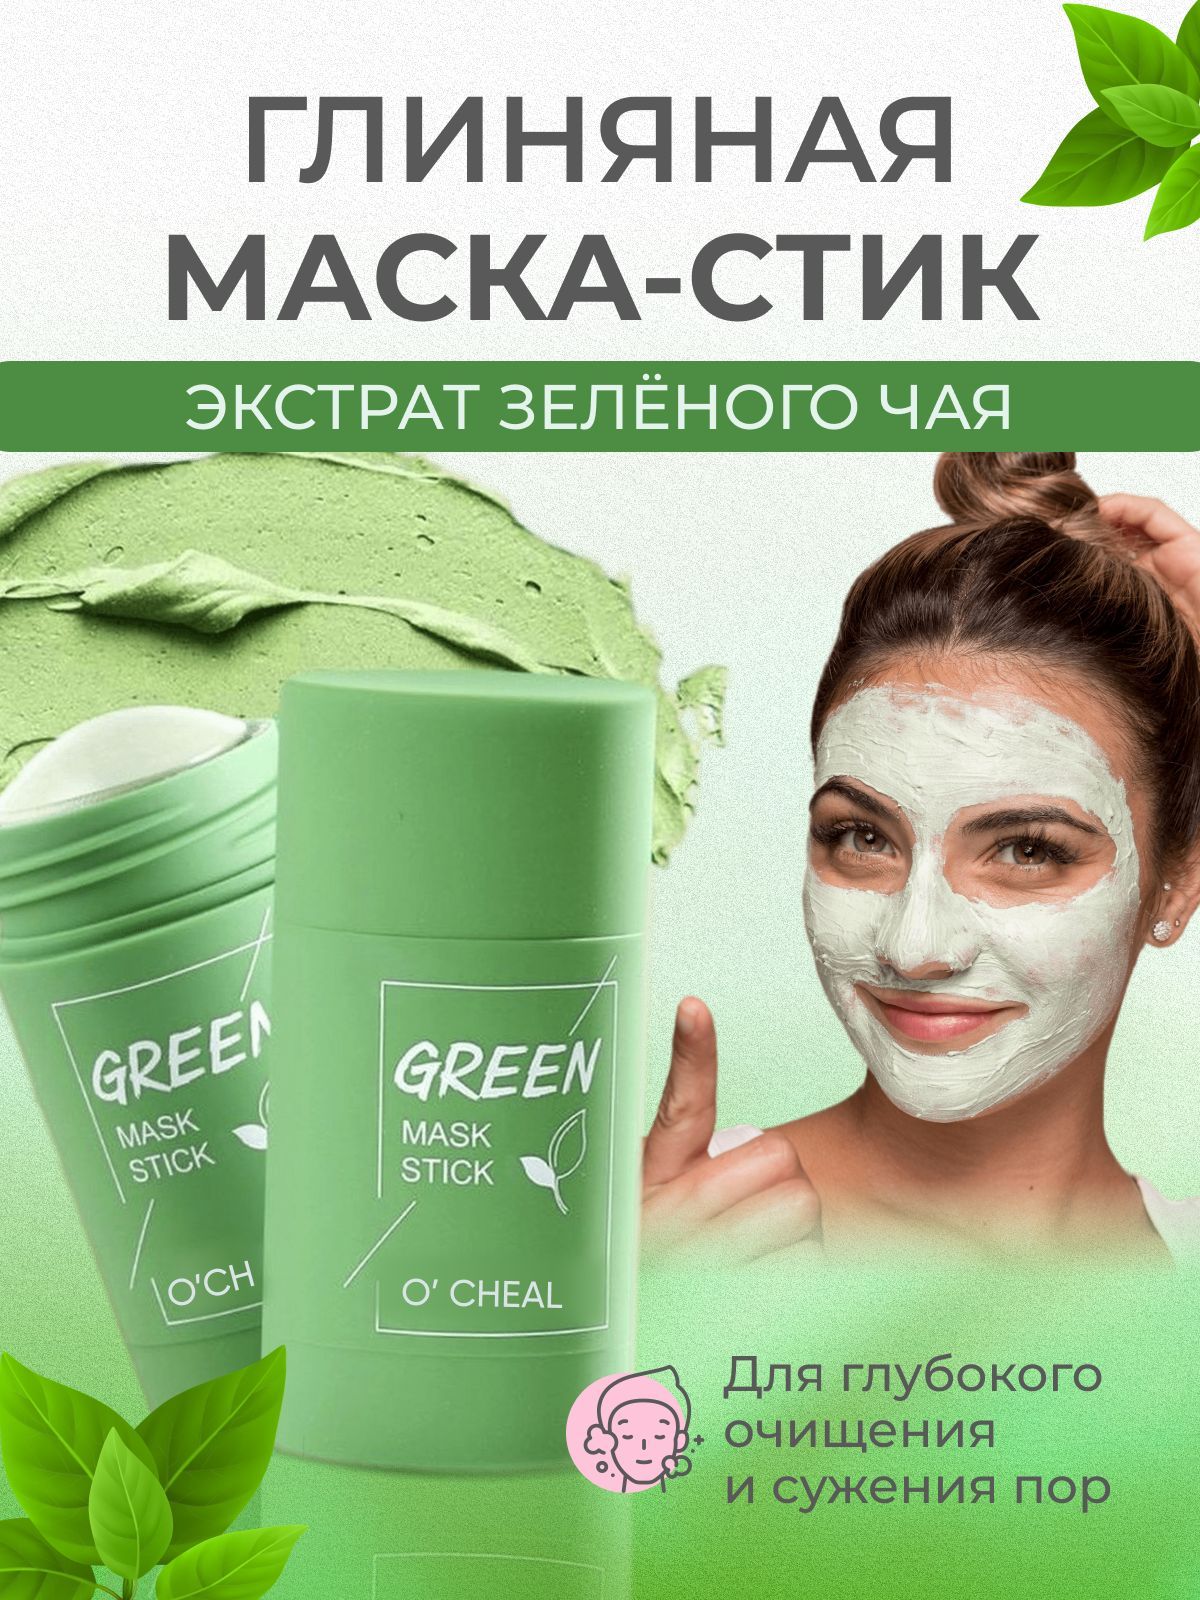 Зеленая маска отзывы. Зеленая глиняная маска для лица. Маска Green o'Cheal. O'Cheal маска-стик Green Mask Stick с экстрактом зеленого чая обзоры. Стик для лица.